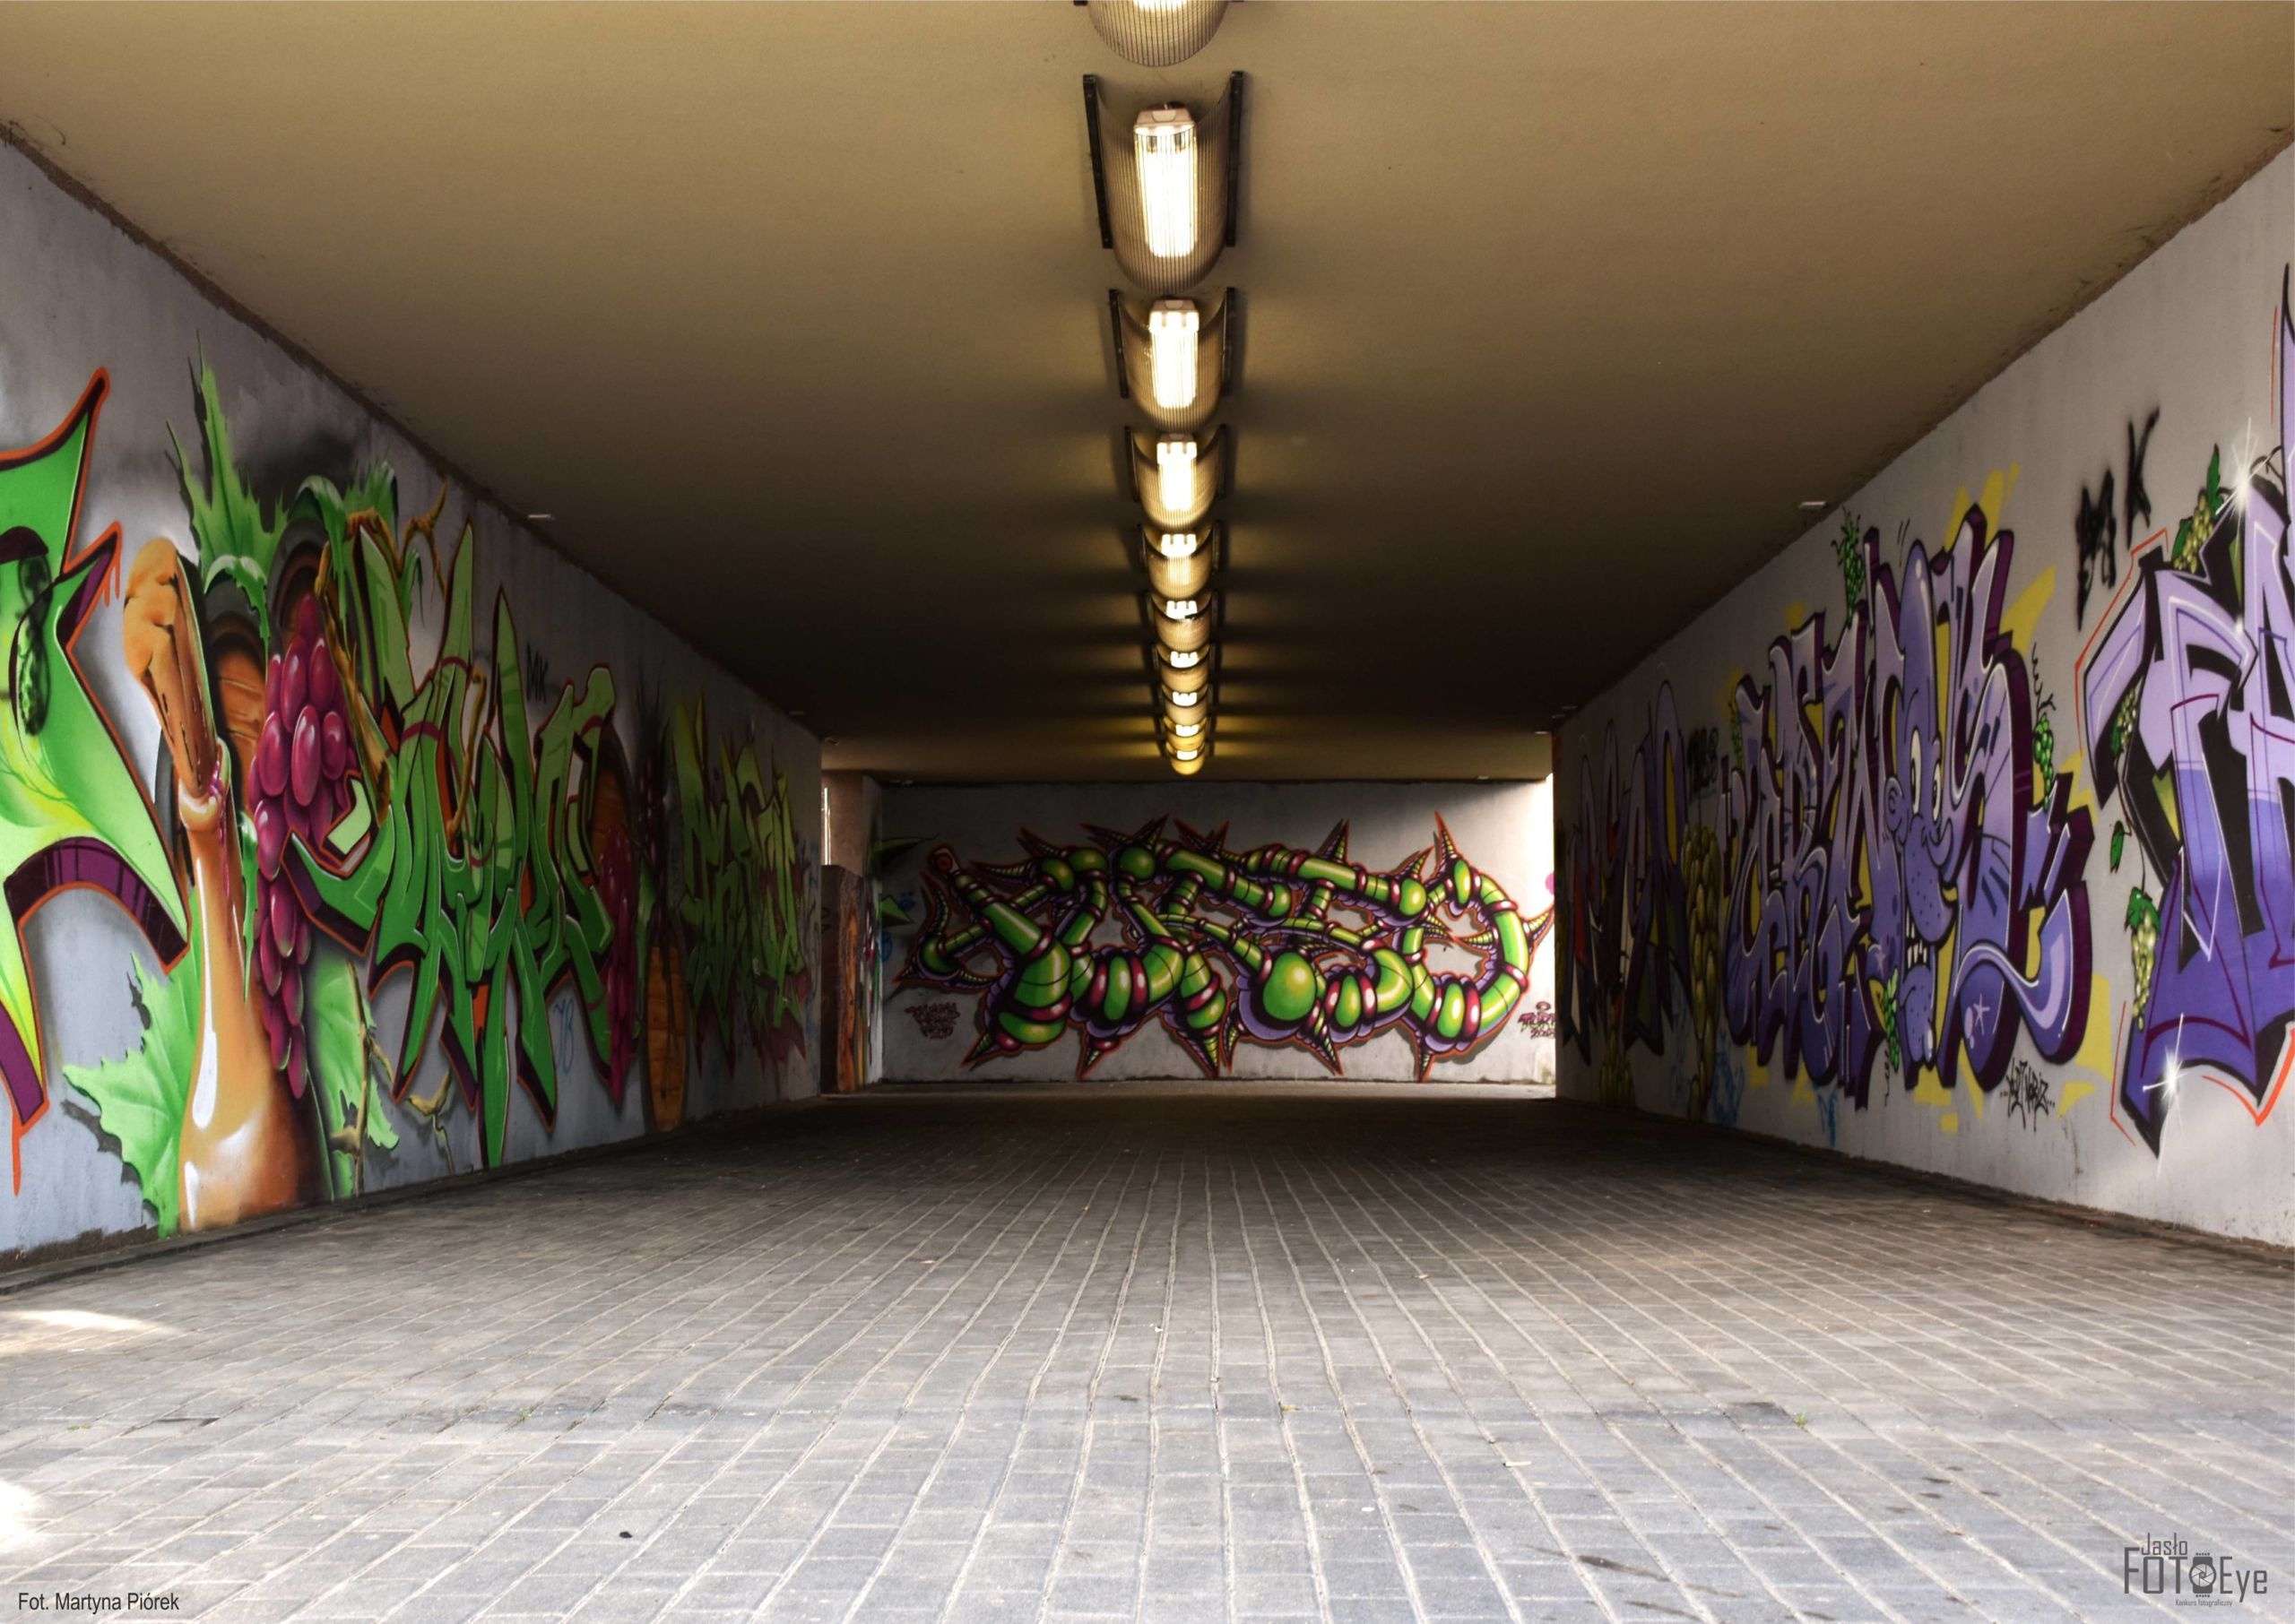 zdjęcie pt. „Tunel Kolorów”, autorstwa Martyny Piórek.